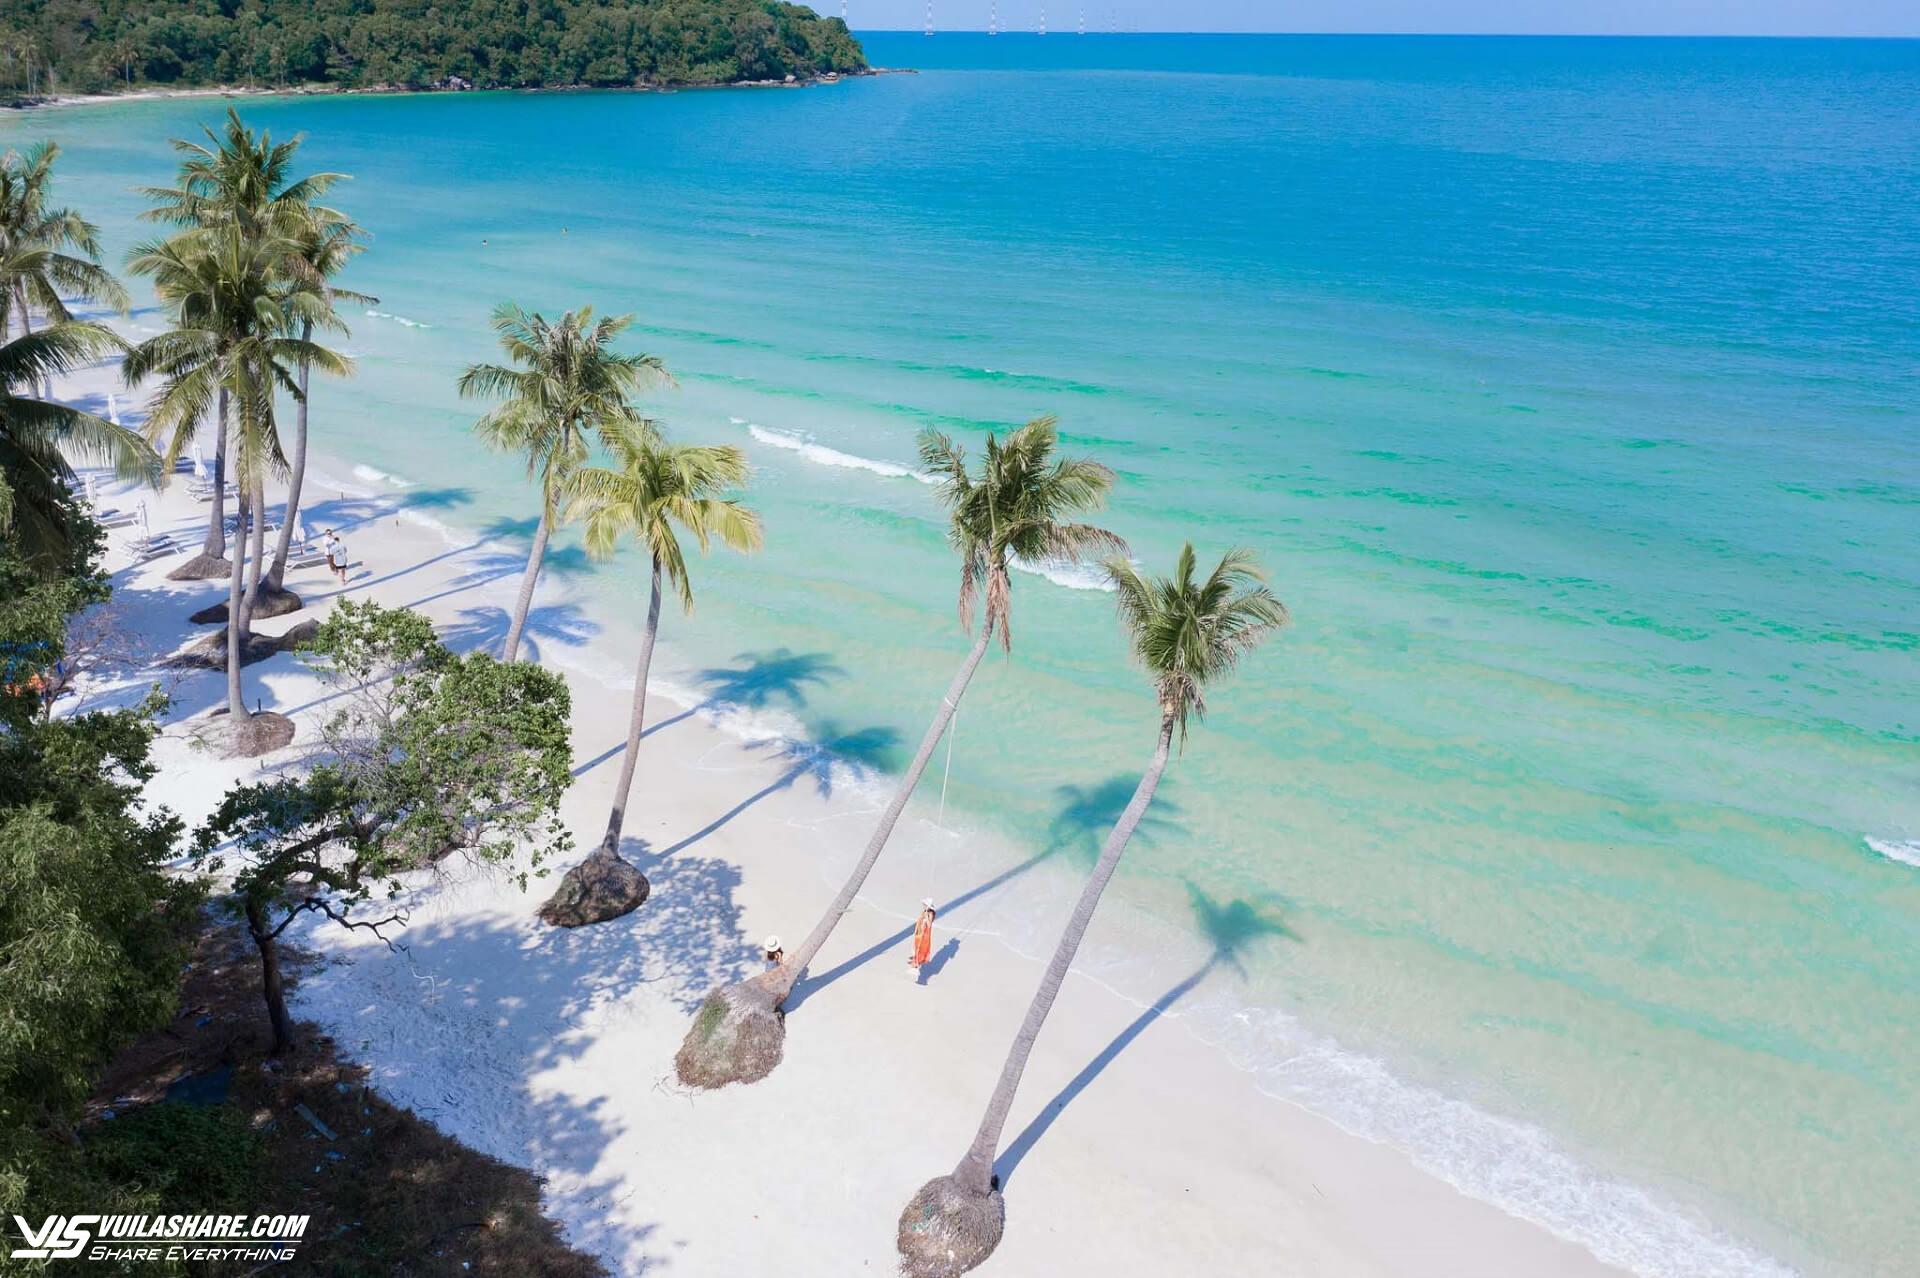 Những bãi biển xanh như ngọc tại Việt Nam khiến du khách mê mẩn- Ảnh 3.